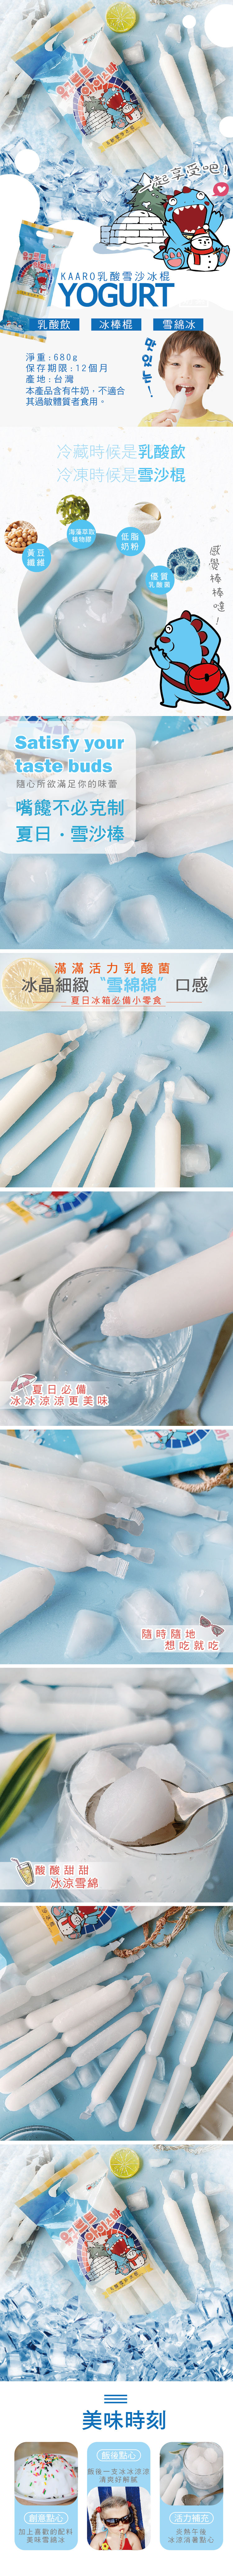 【KAARO】雪沙乳酸棒(8支/包) 低卡消暑 冷藏乳酸飲 冷凍雪沙棒